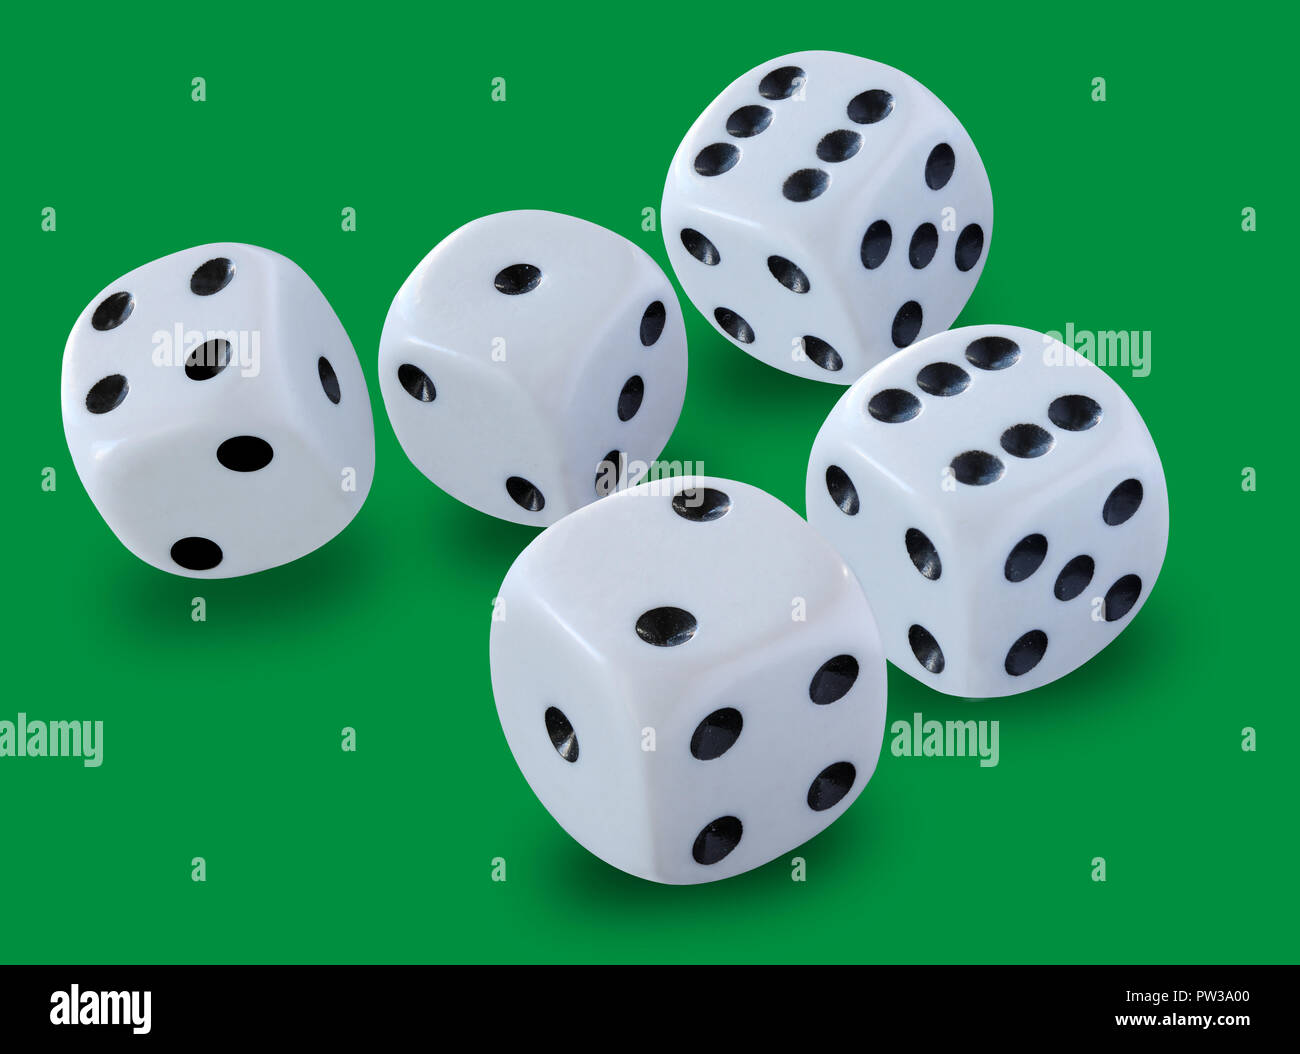 Fünf weißen Würfel Größe in ein Craps Spiel, Yahtzee oder jede Art von würfelspiel vor einem grünen Hintergrund geworfen Stockfoto